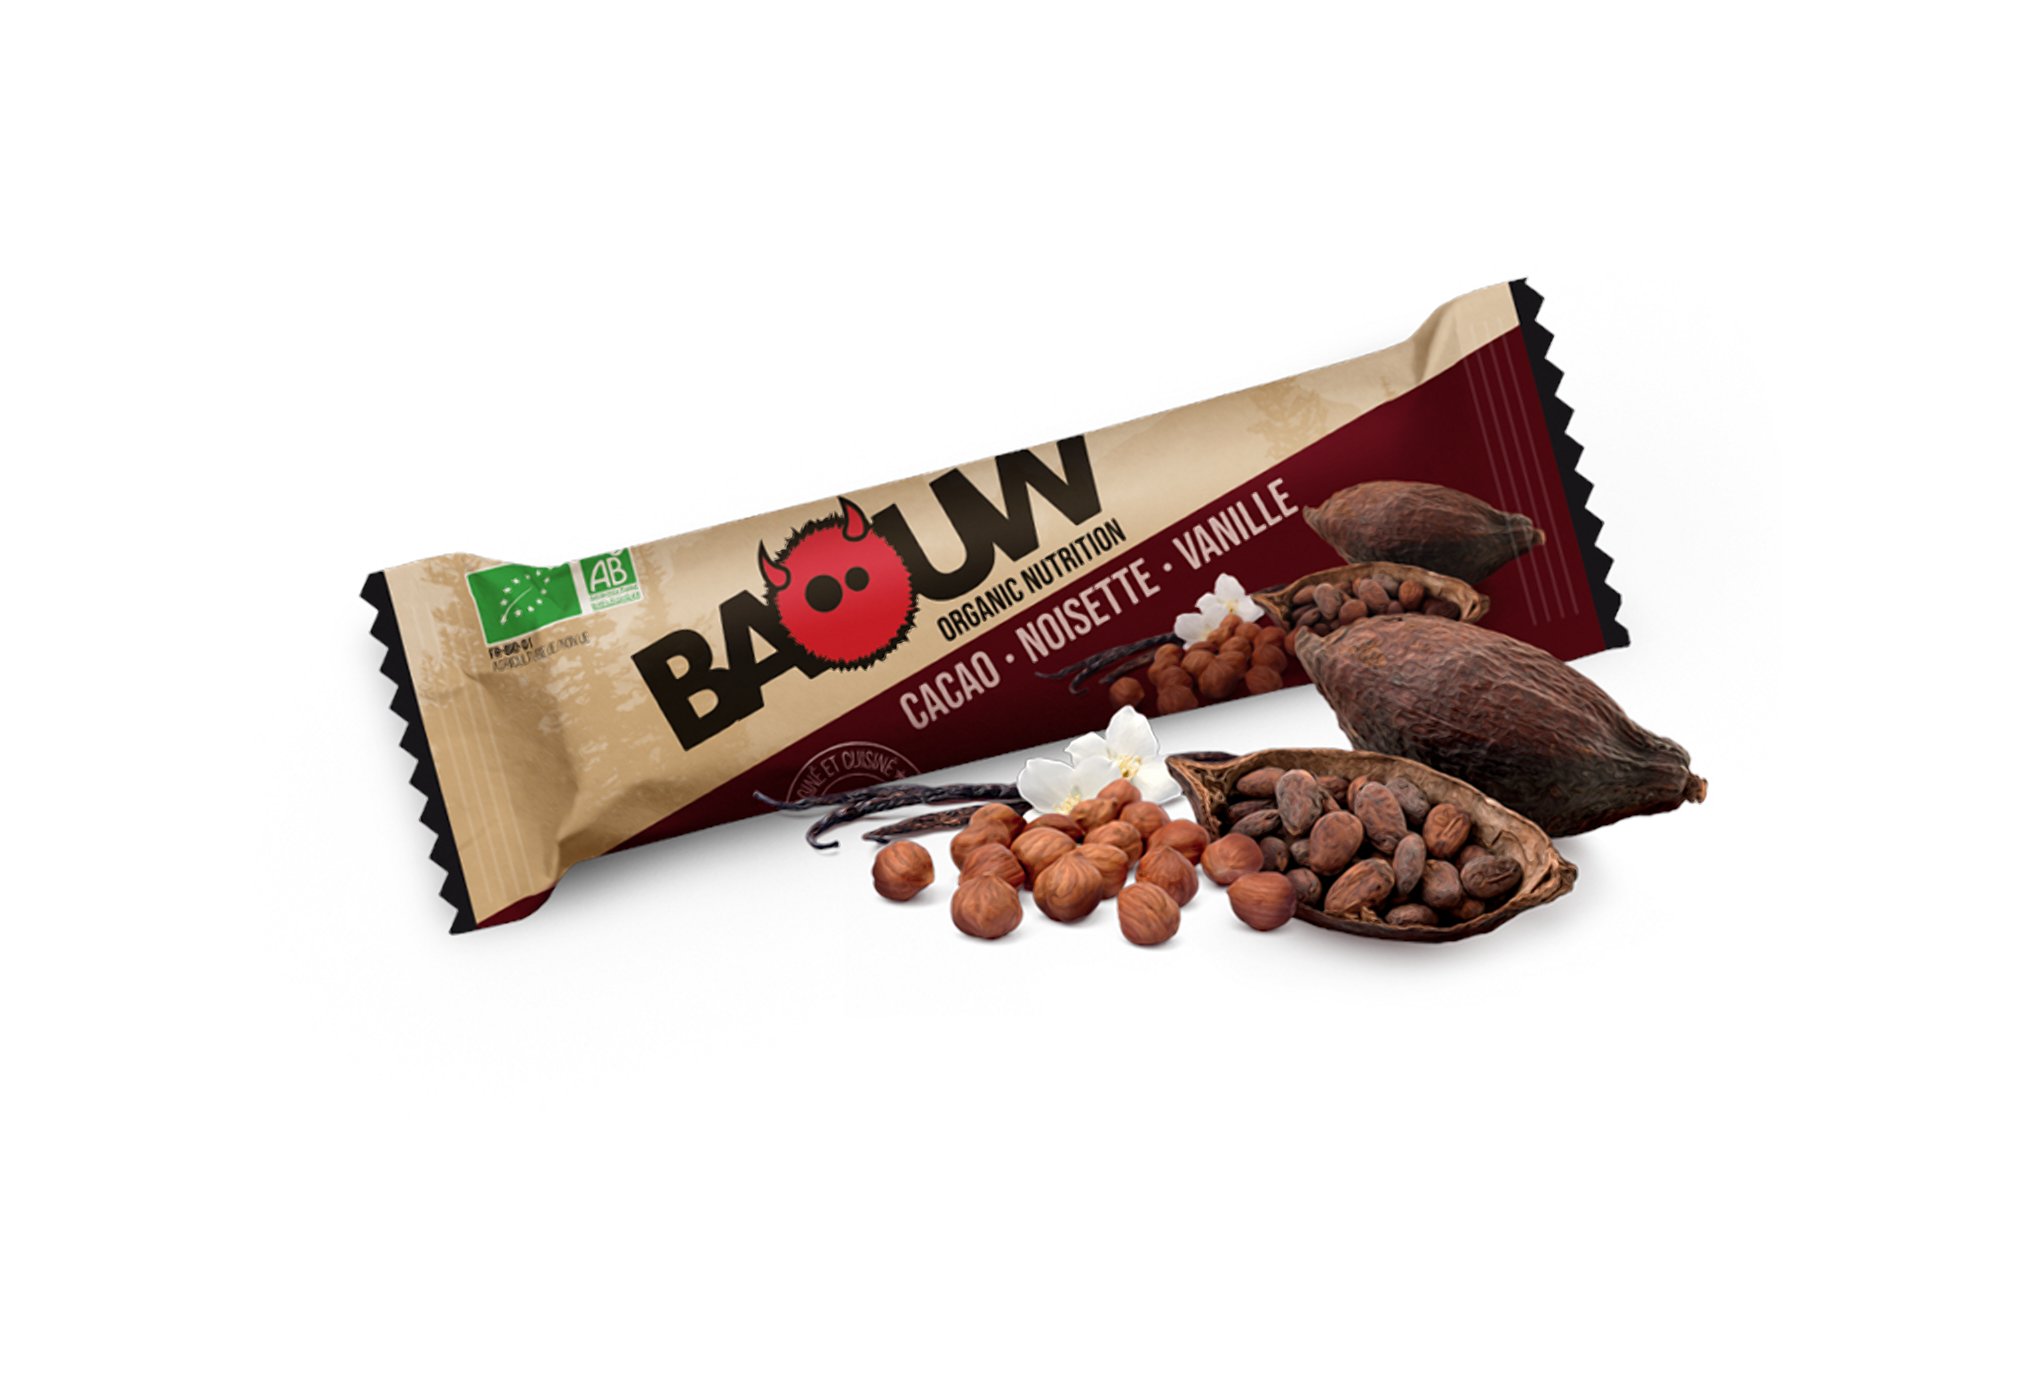 Baouw Barre nutritionnelle bio - Cacao - Noisette - Vanille Diététique $scat.CAT_NOM